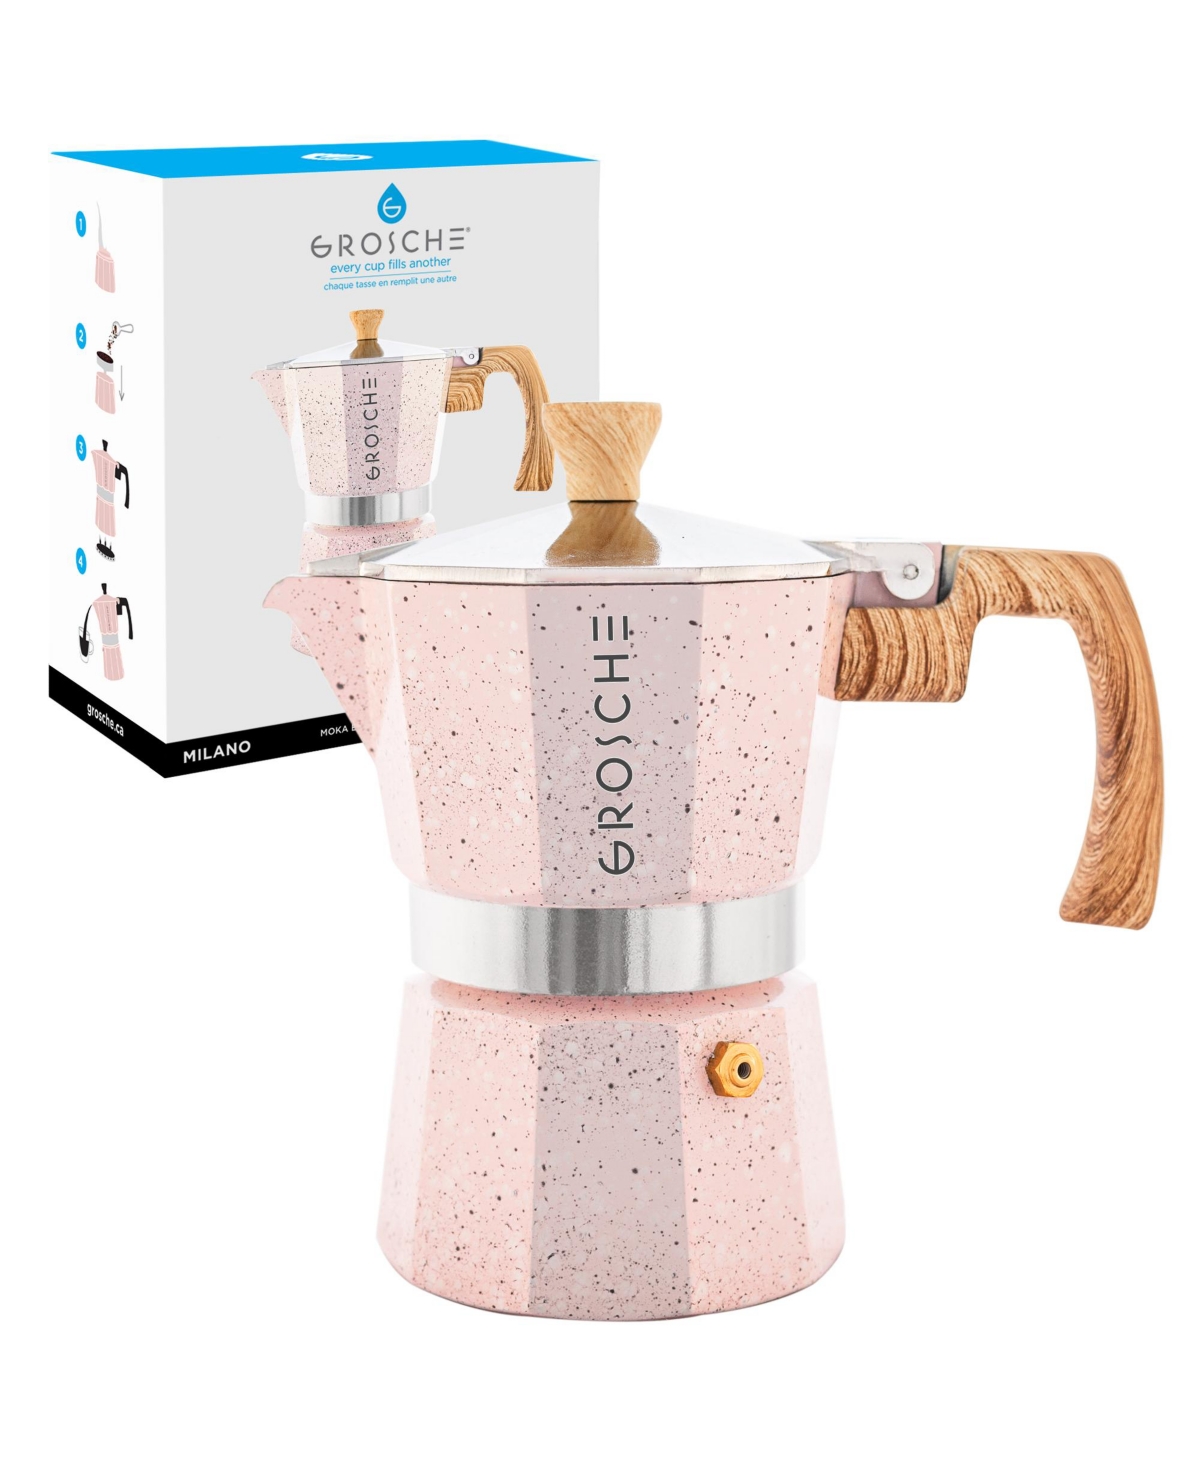 Grosche Milano Stone Stovetop Espresso Maker Moka Pot 3 Cup, 5 oz In Blush Pink